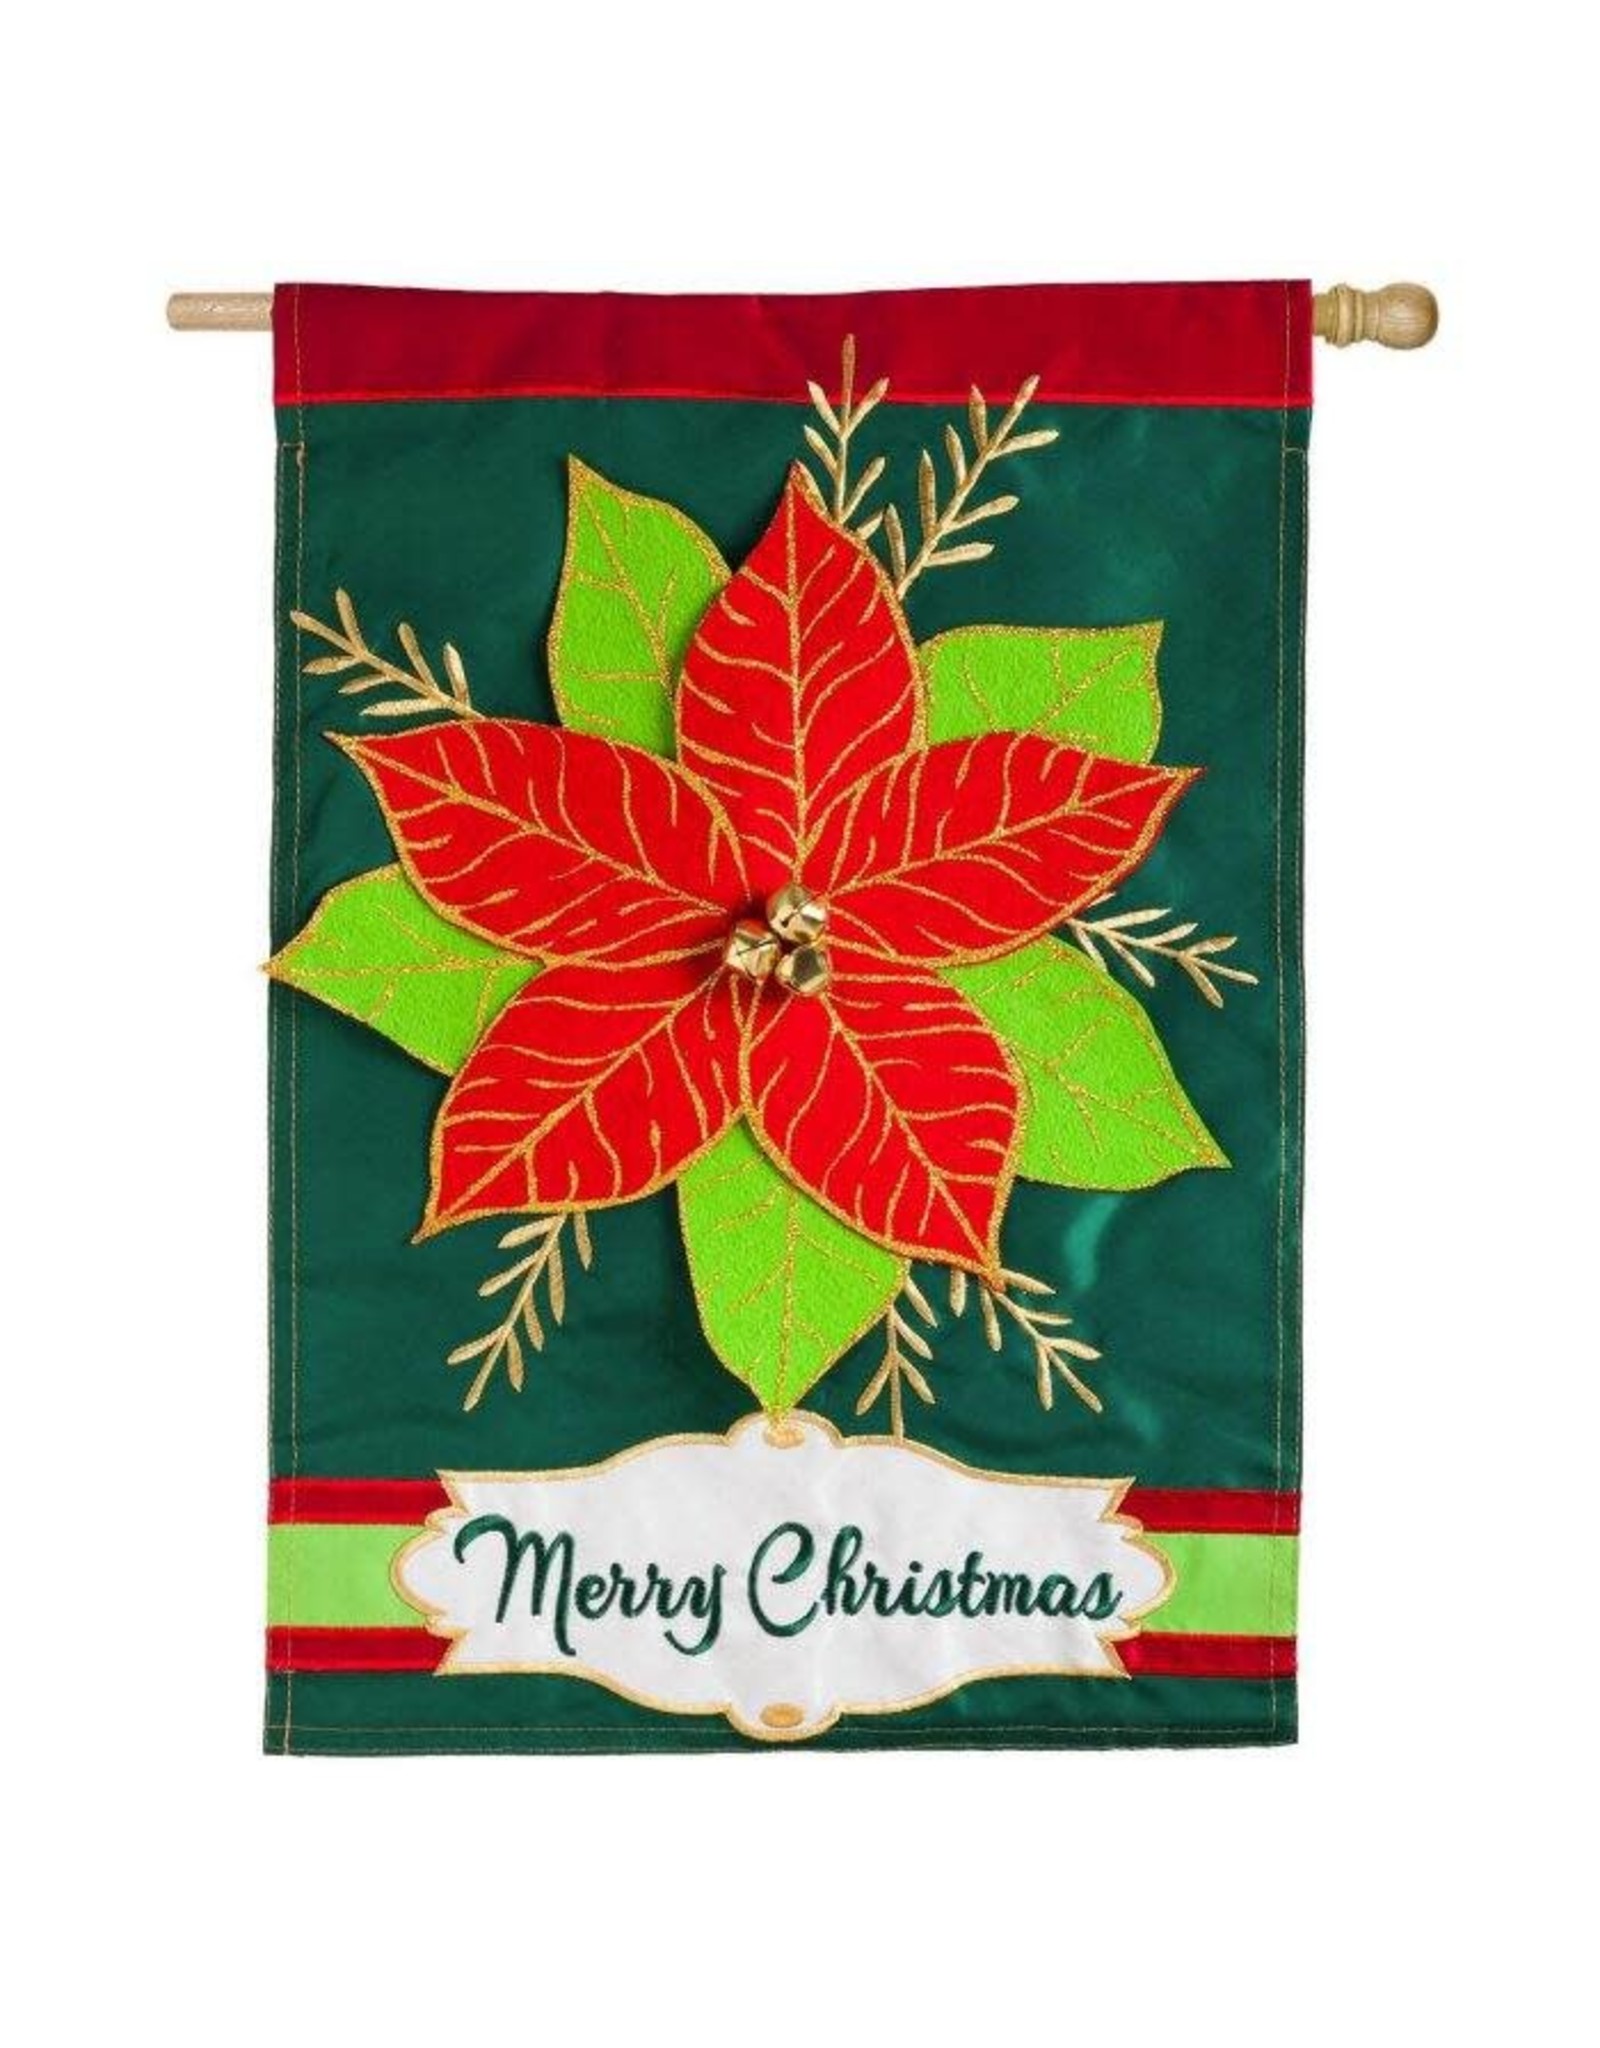 Evergreen Enterprises Christmas Poinsetta Regular Flag